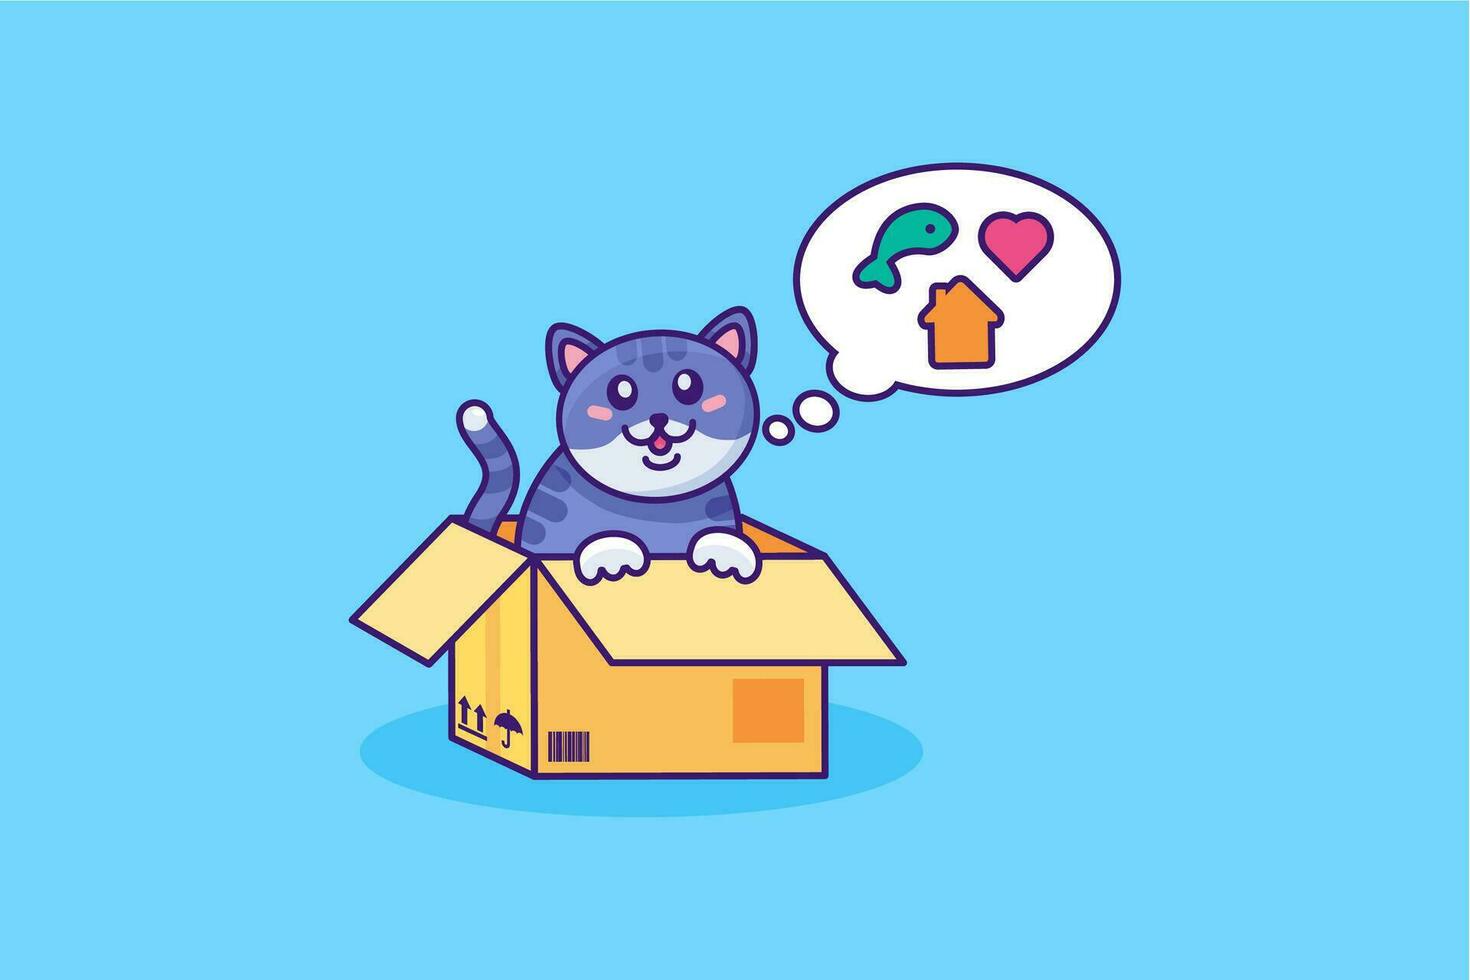 adopter chaton dans papier carton boîte illustration vecteur